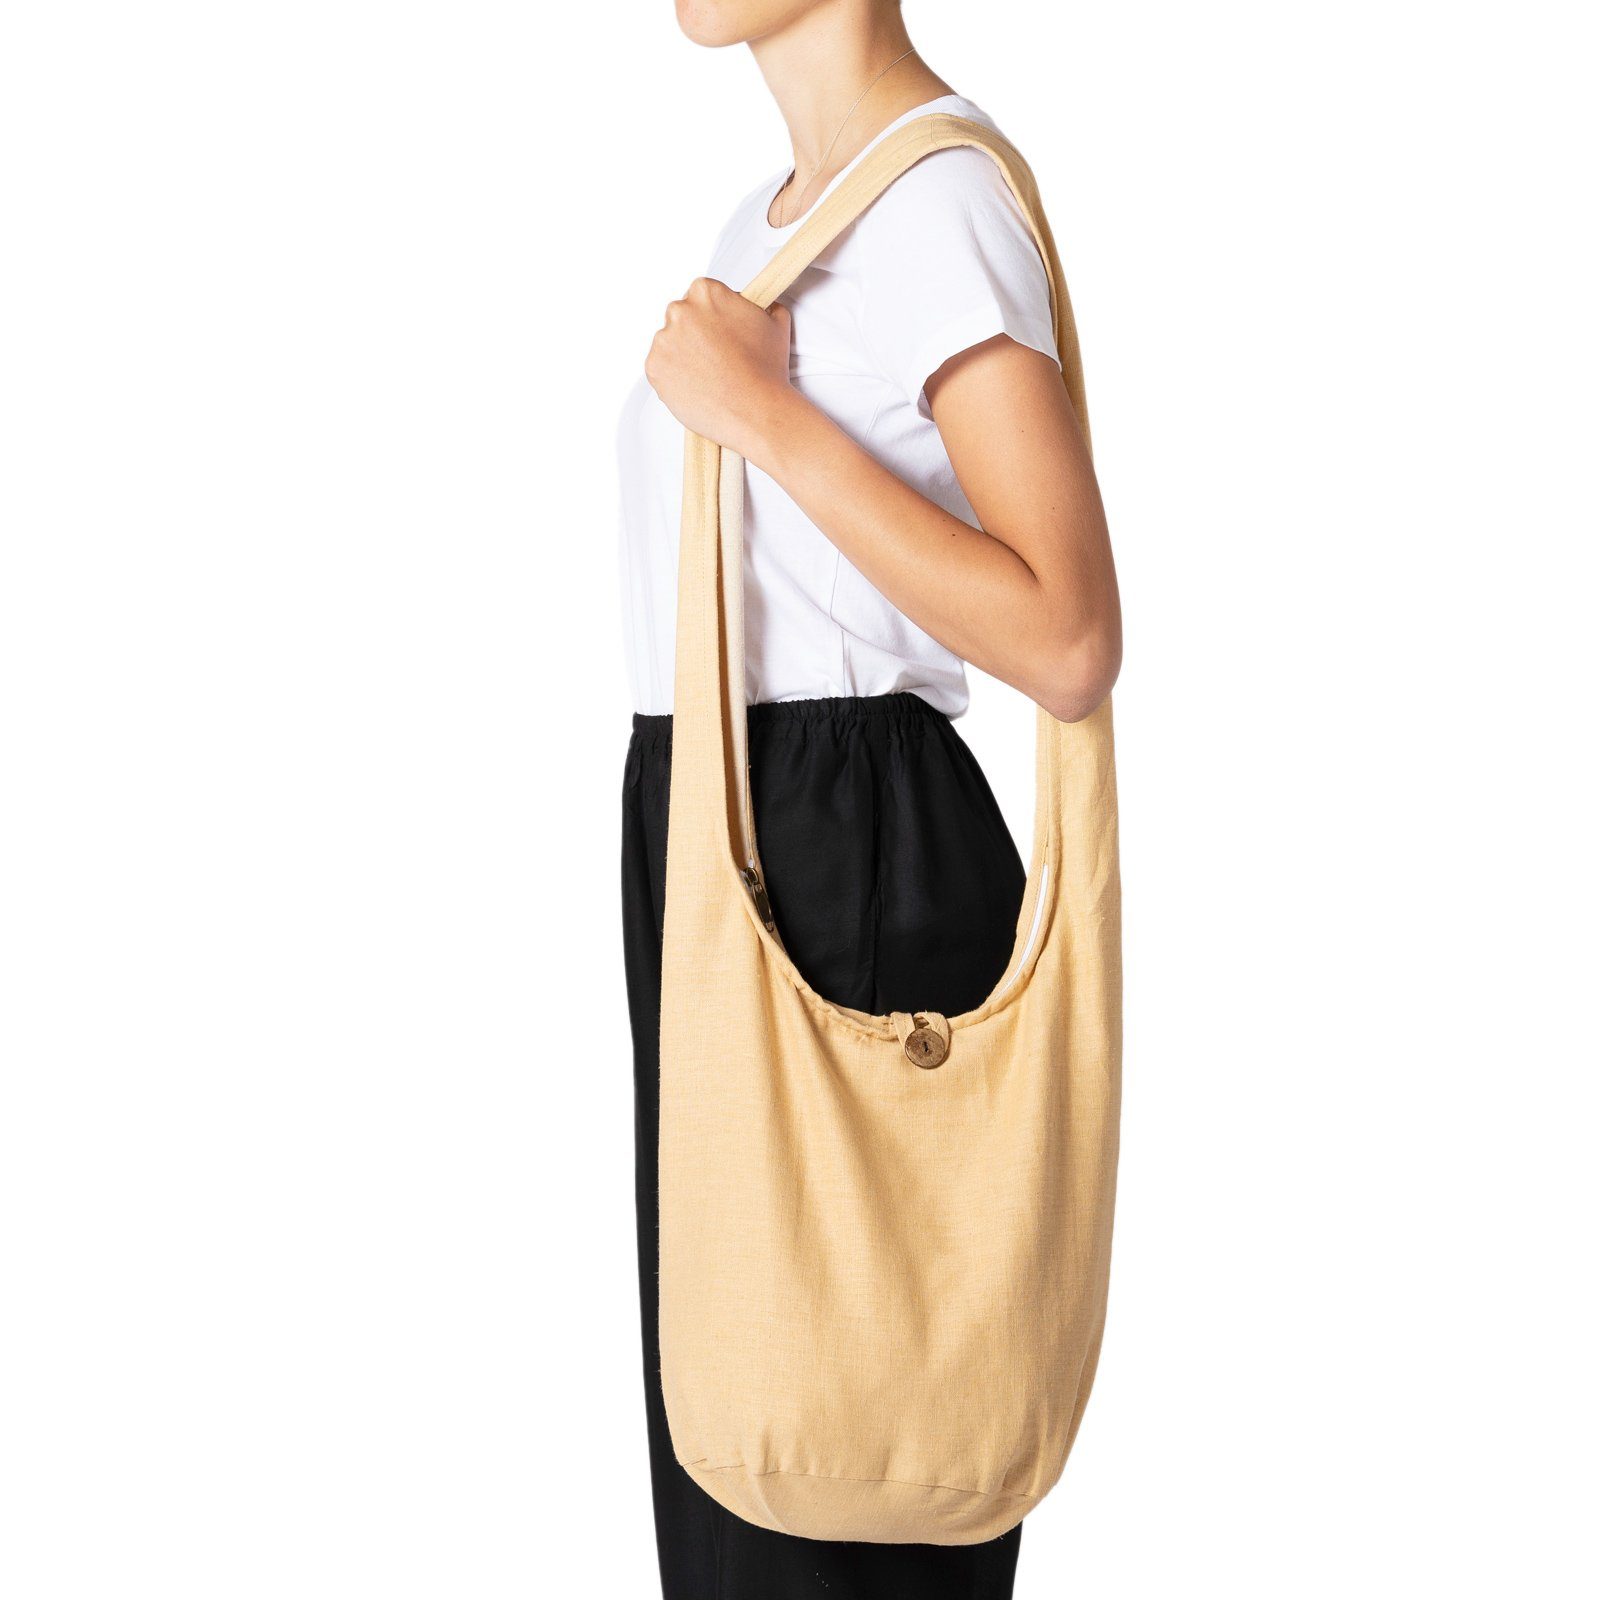 2 aus PANASIAM Umhängetasche Hanf cream-weiß Größen, Schultertasche Strandtasche Yogatasche auch oder als Handtasche Schulterbeutel einfarbig Wickeltasche in